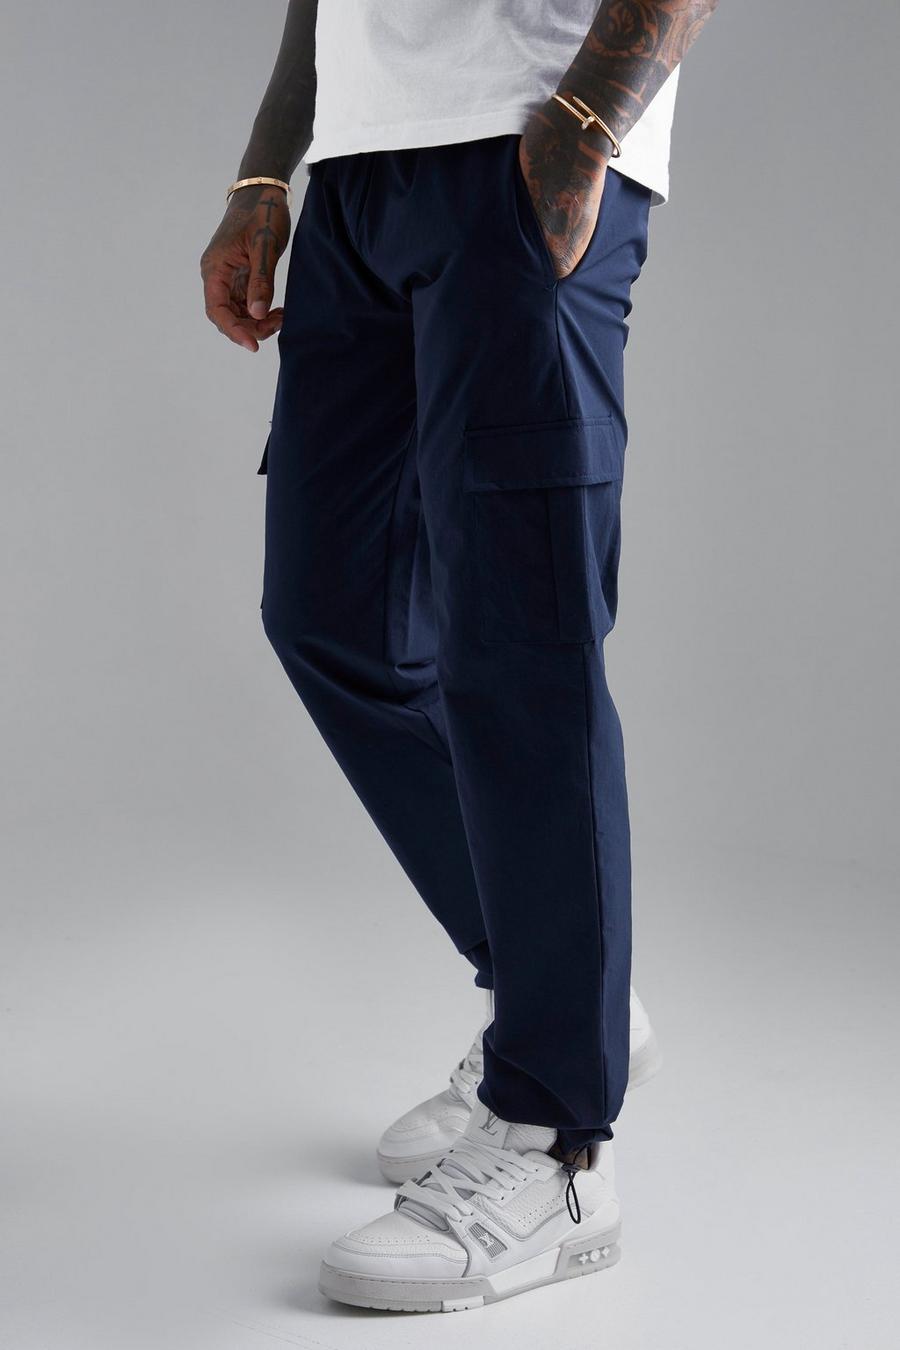 Pantalón ajustado cargo elástico técnico con alamar, Navy azul marino